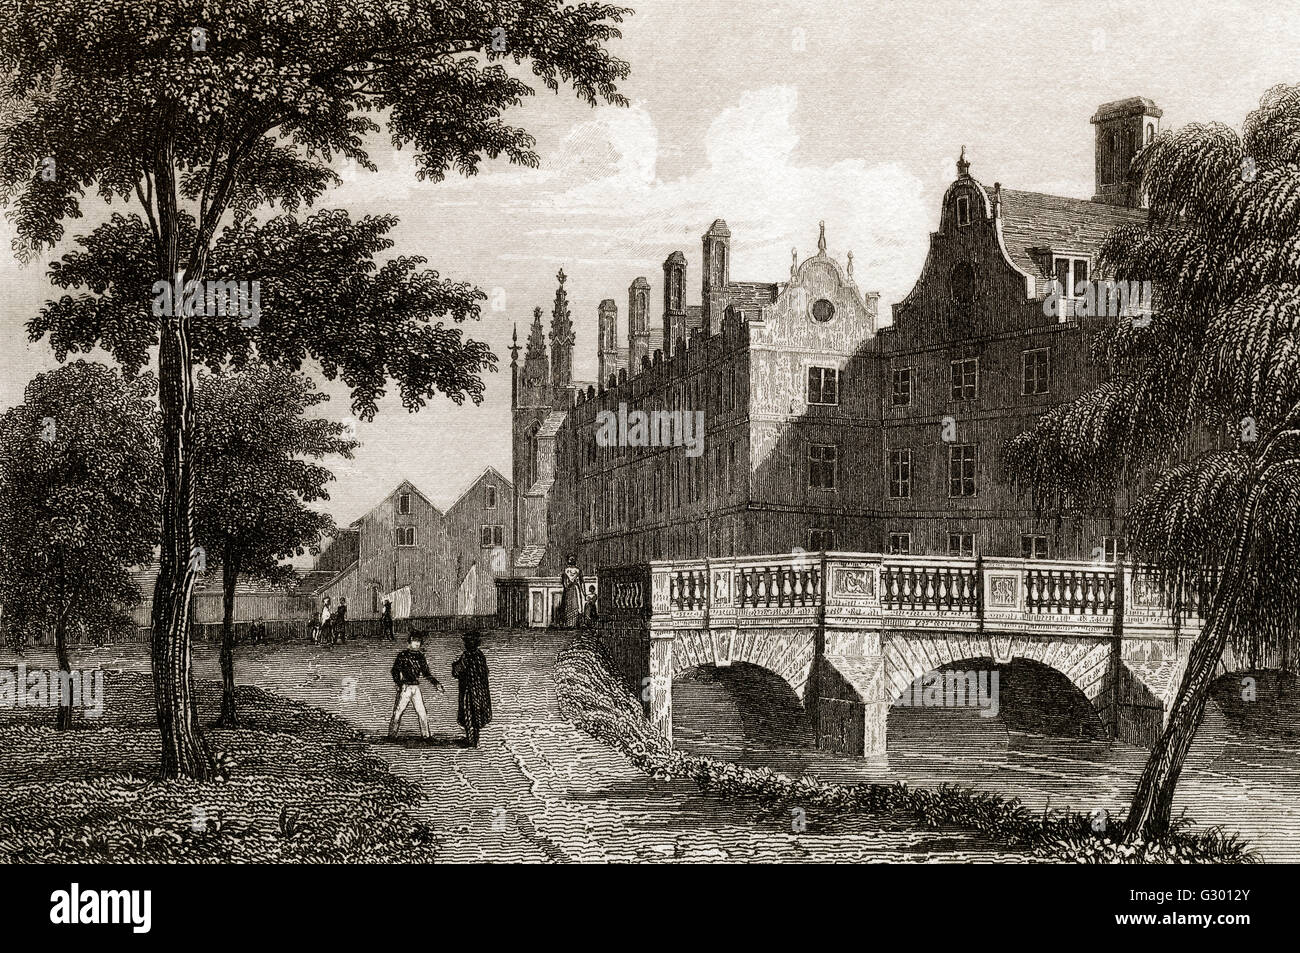 L'Université de Cambridge, Angleterre, 18e siècle Banque D'Images